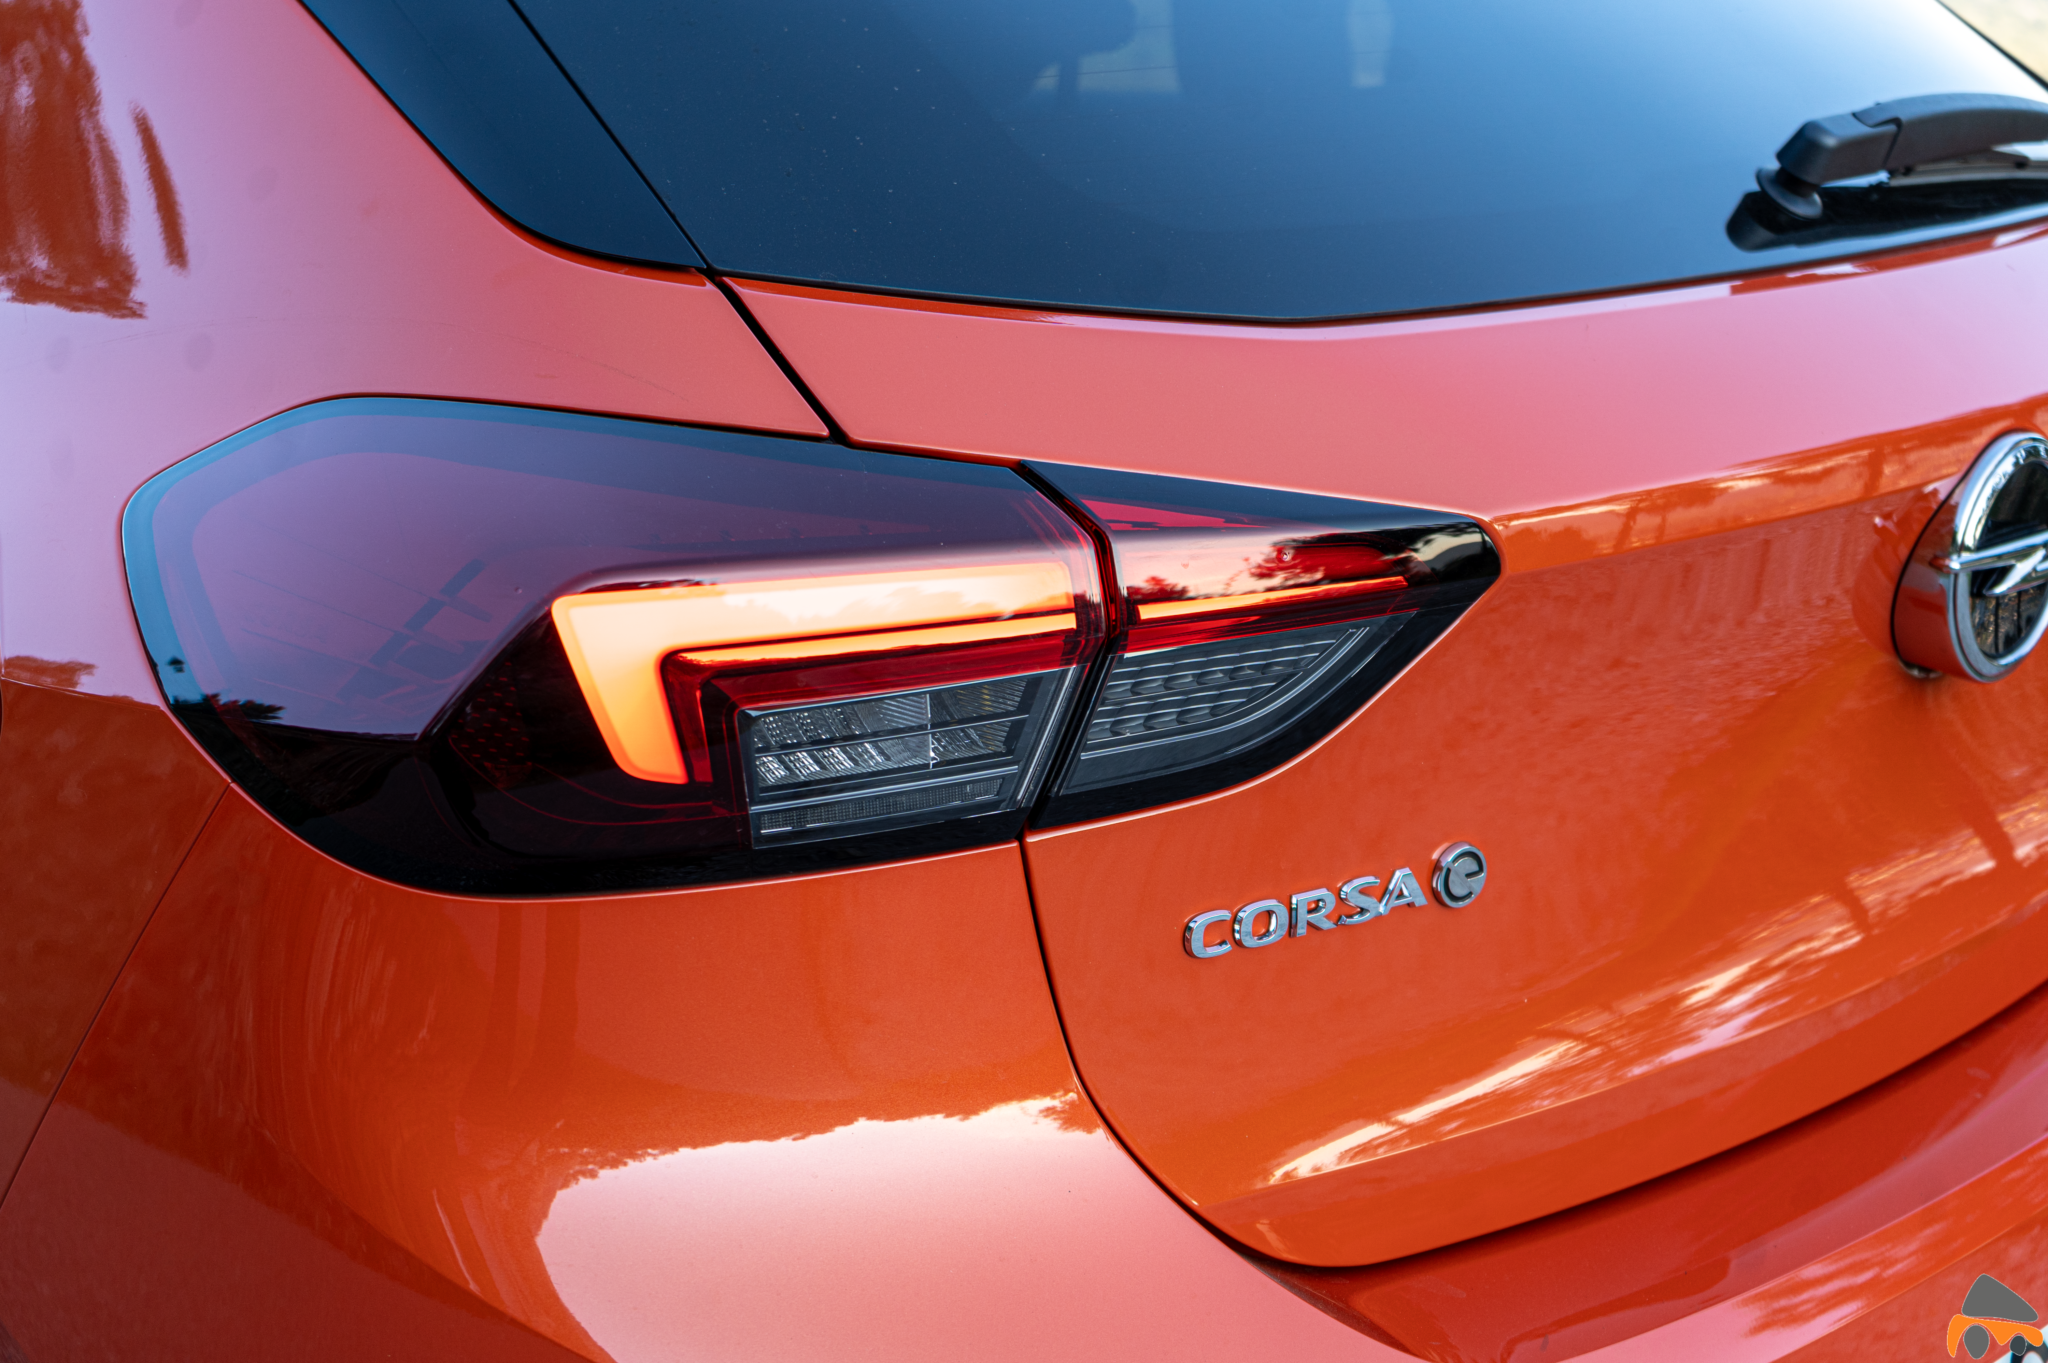 Logo corsa e 2 Opel Corsa e - Prueba Opel Corsa-e 2020: El primer coche eléctrico de Opel tiene 136 CV y 280 km reales de autonomía